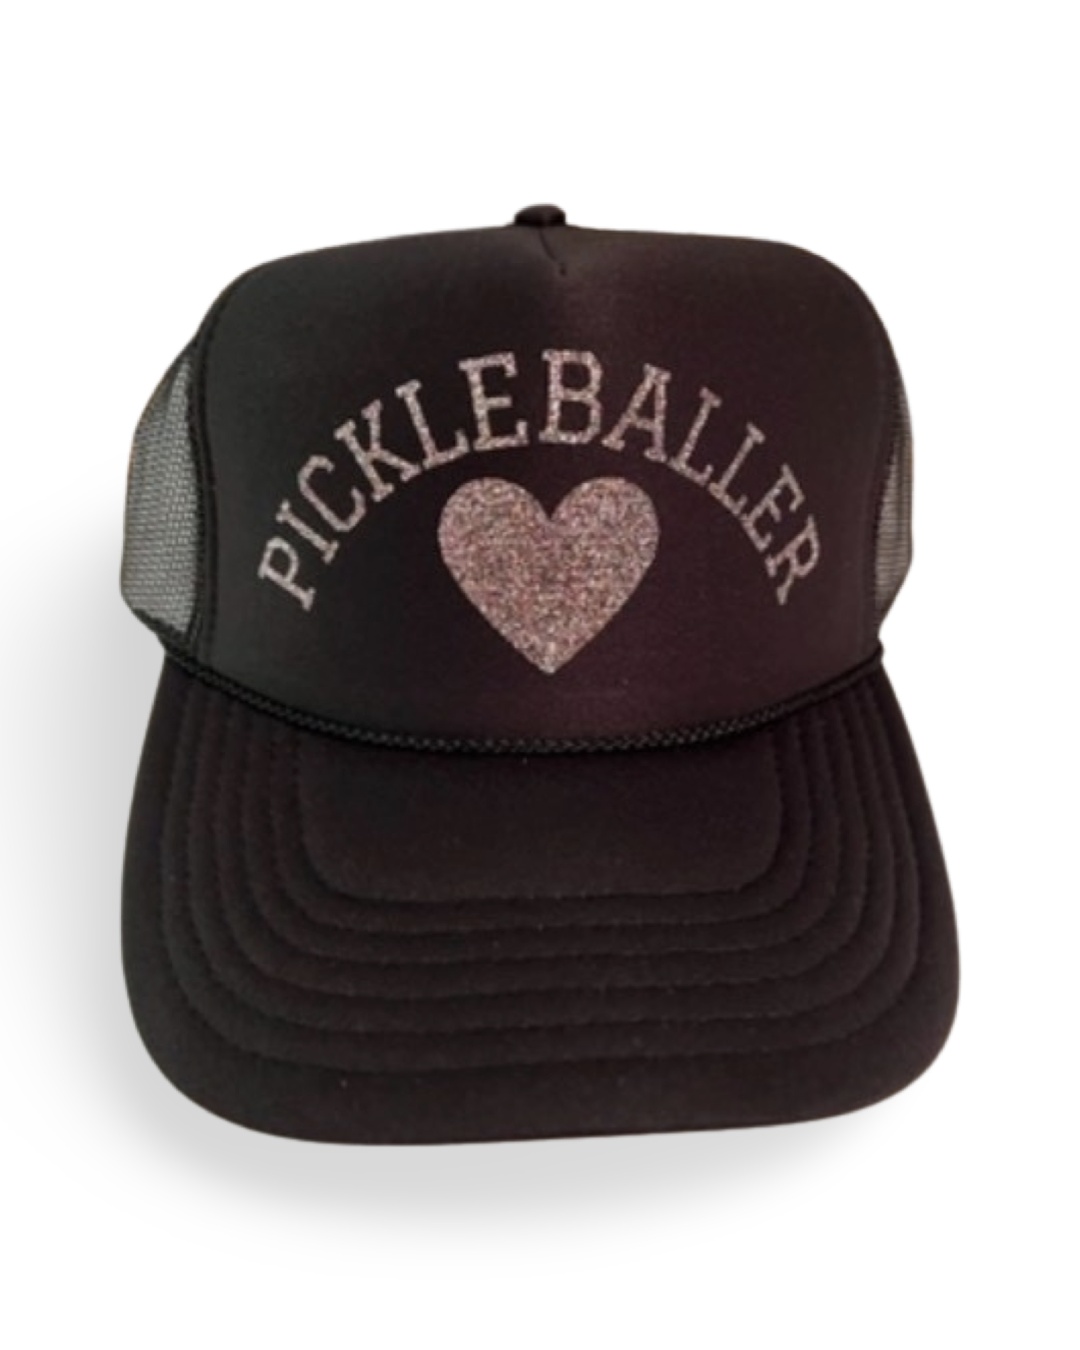 Pickle Baller Hat in Black